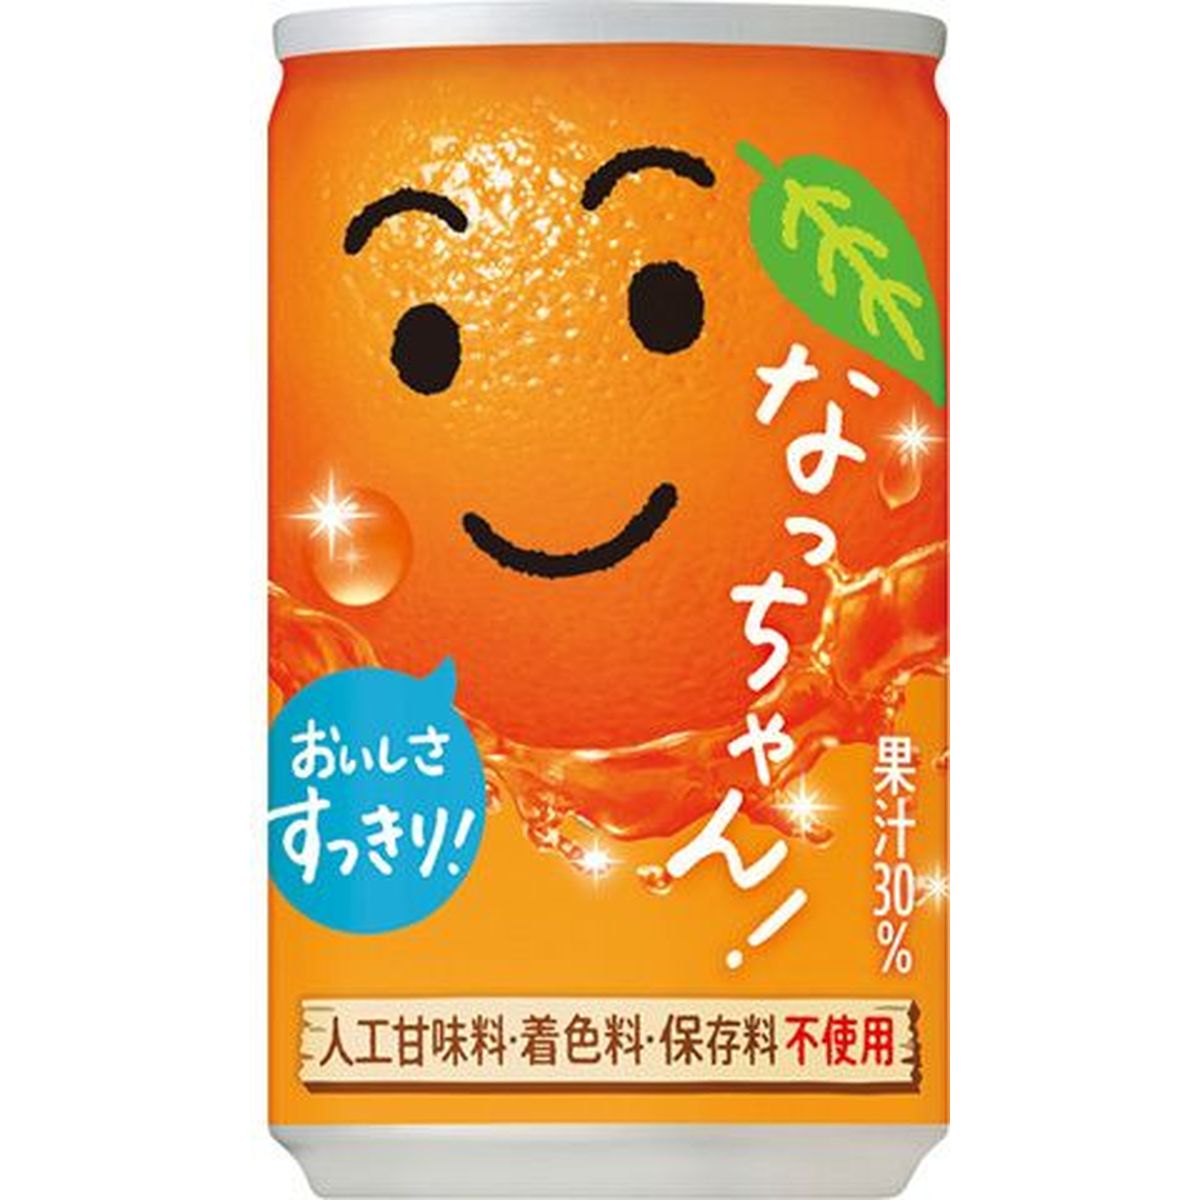 【30個入リ】サントリー ナッチャン オレンジ 缶 160g